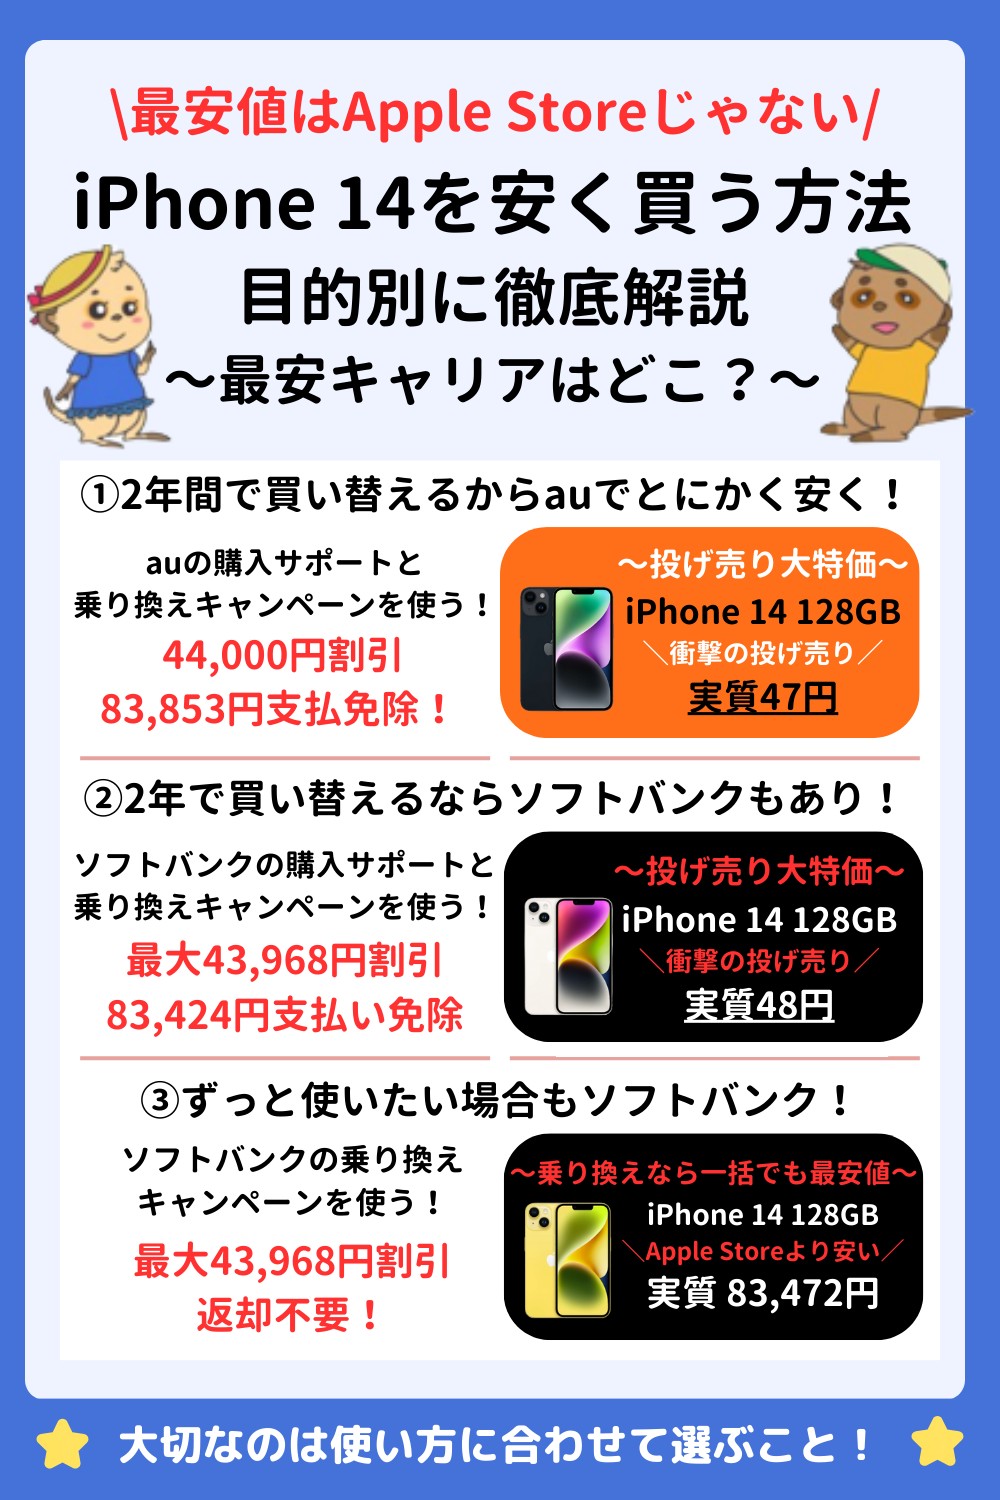 iPhone 14 キャンペーン 図解